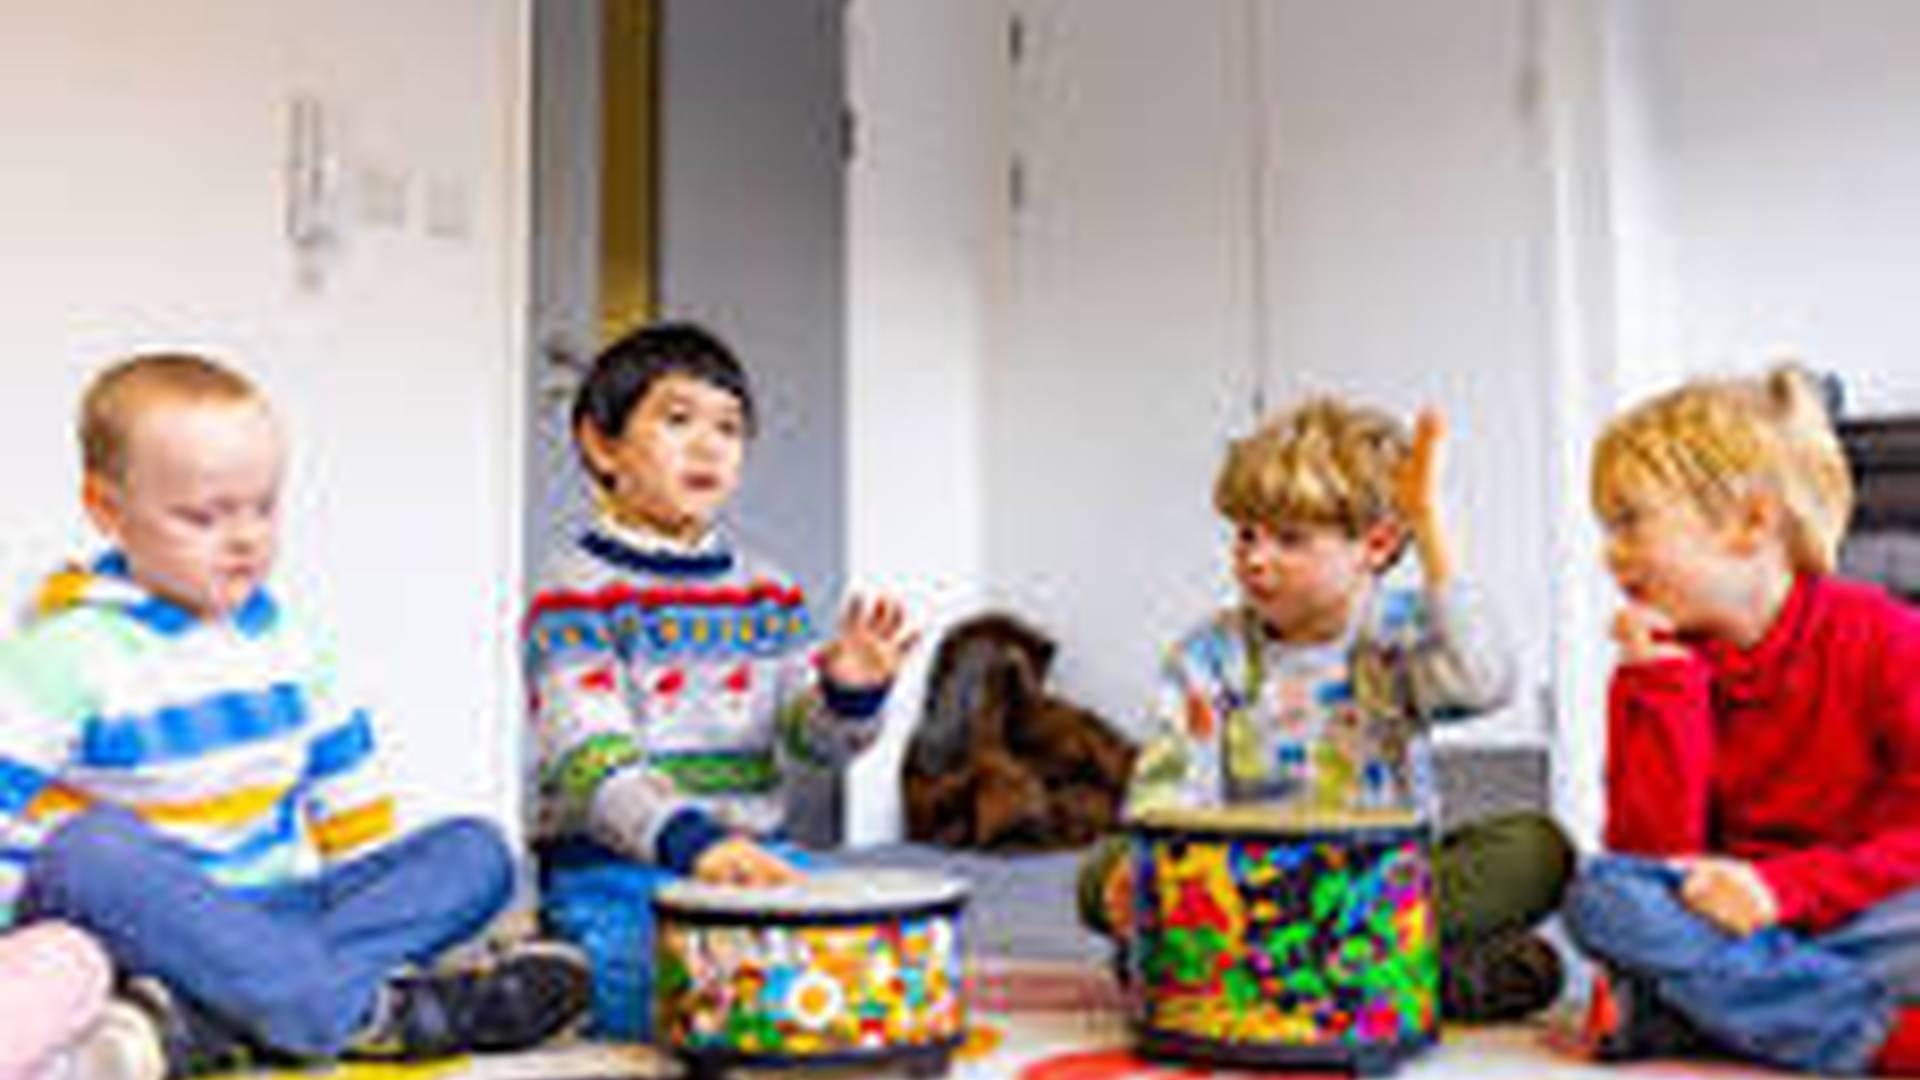 Glasgow Children's Music School - Preschool photo